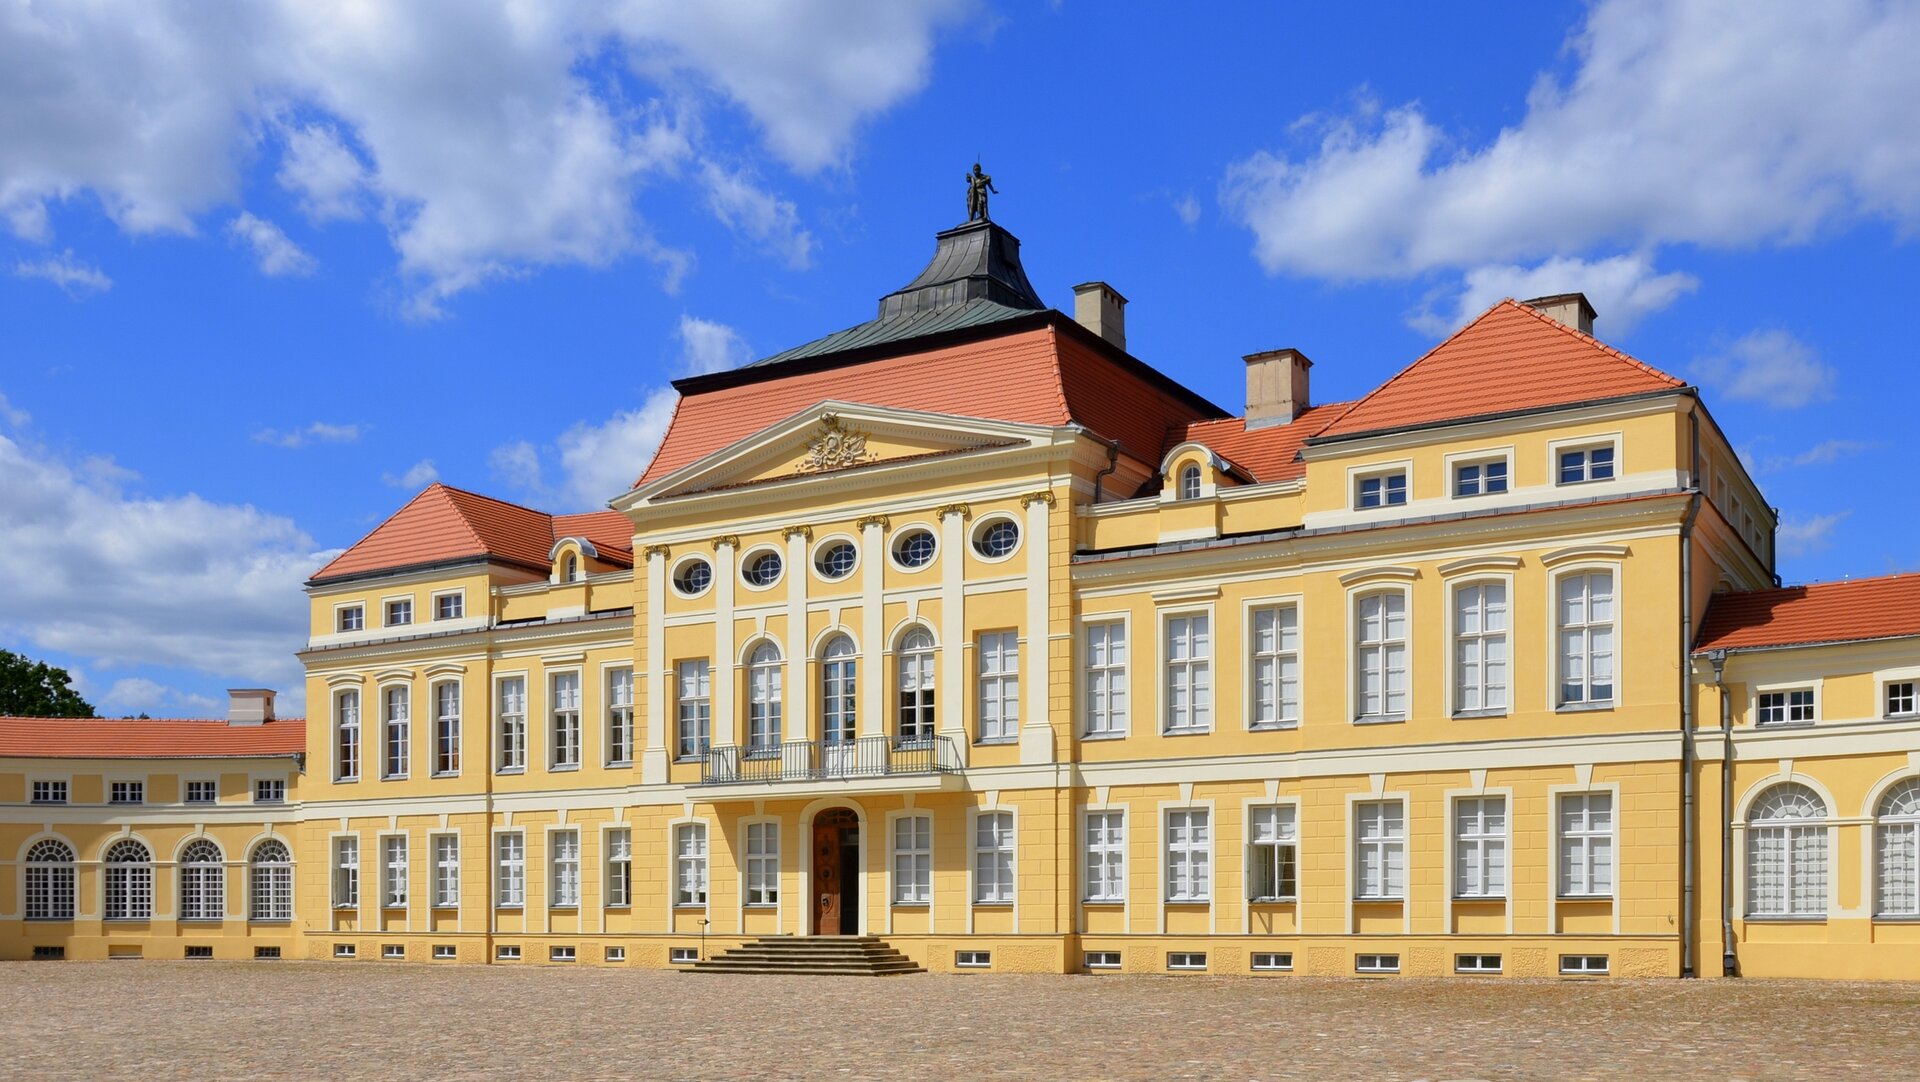 Fotografia przedstawiająca Pałac Raczyńskich w Rogalinie, 1768–1776. Jest to zespół pałacowo‑parkowy zbudowany w stylu późnobarokowym. Prostokątne były budynku wypełnione są bardzo licznymi oknami. Przed wejściem znajdują się niewielkie schody. Nad wejściem balkon. Dach z czerwonej cegły. Na samym szczycie dachu znajduje się rzeźba postaci męskiej. 